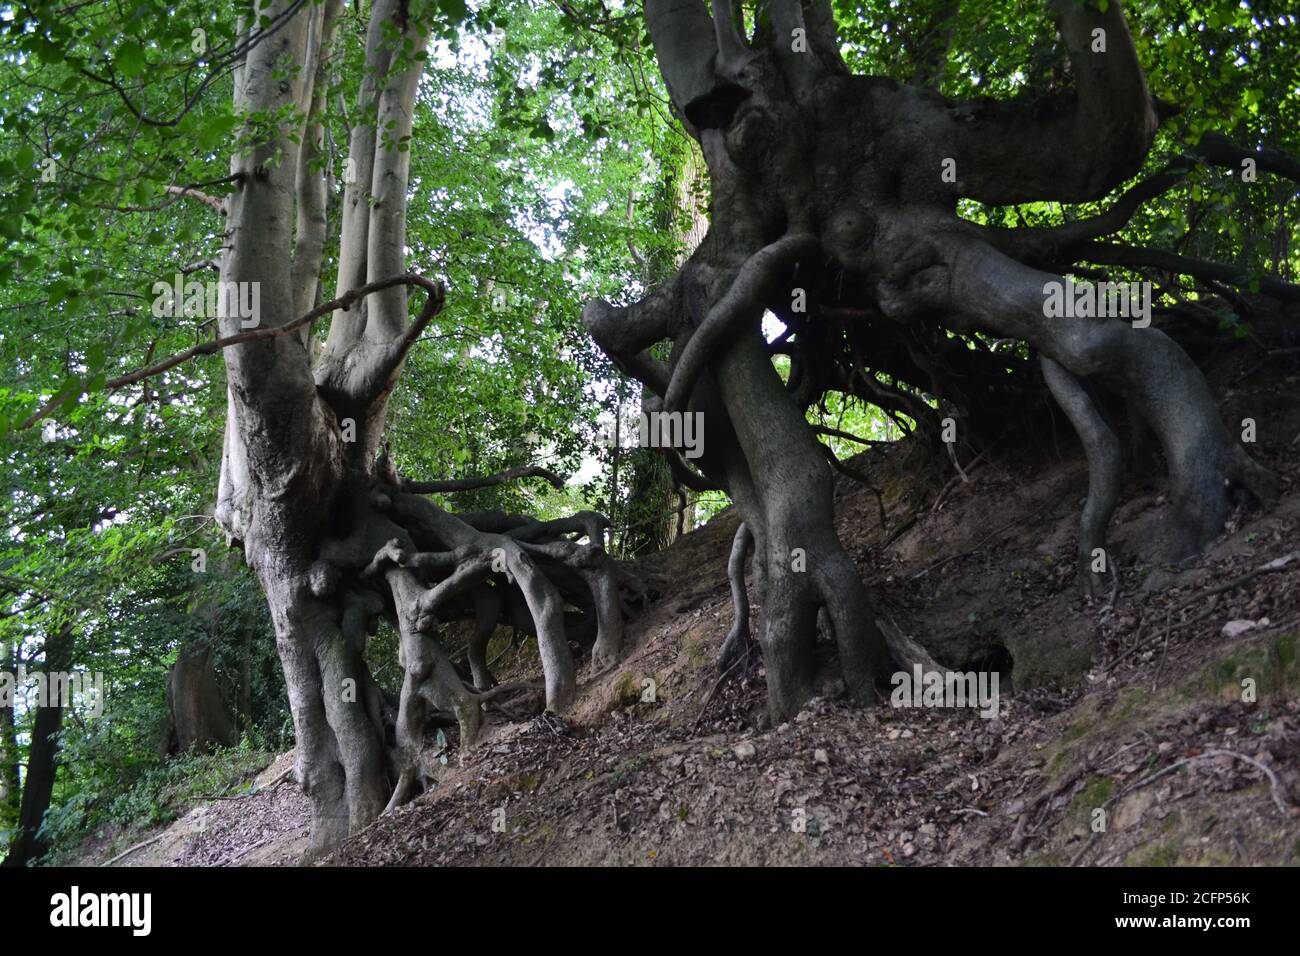 Incredibili alberi di faggio che crescono da un argine come le tende del Signore degli anelli. Gli alberi sembrano come se fossero in grado di camminare. A Underriver, Kent. Foto Stock